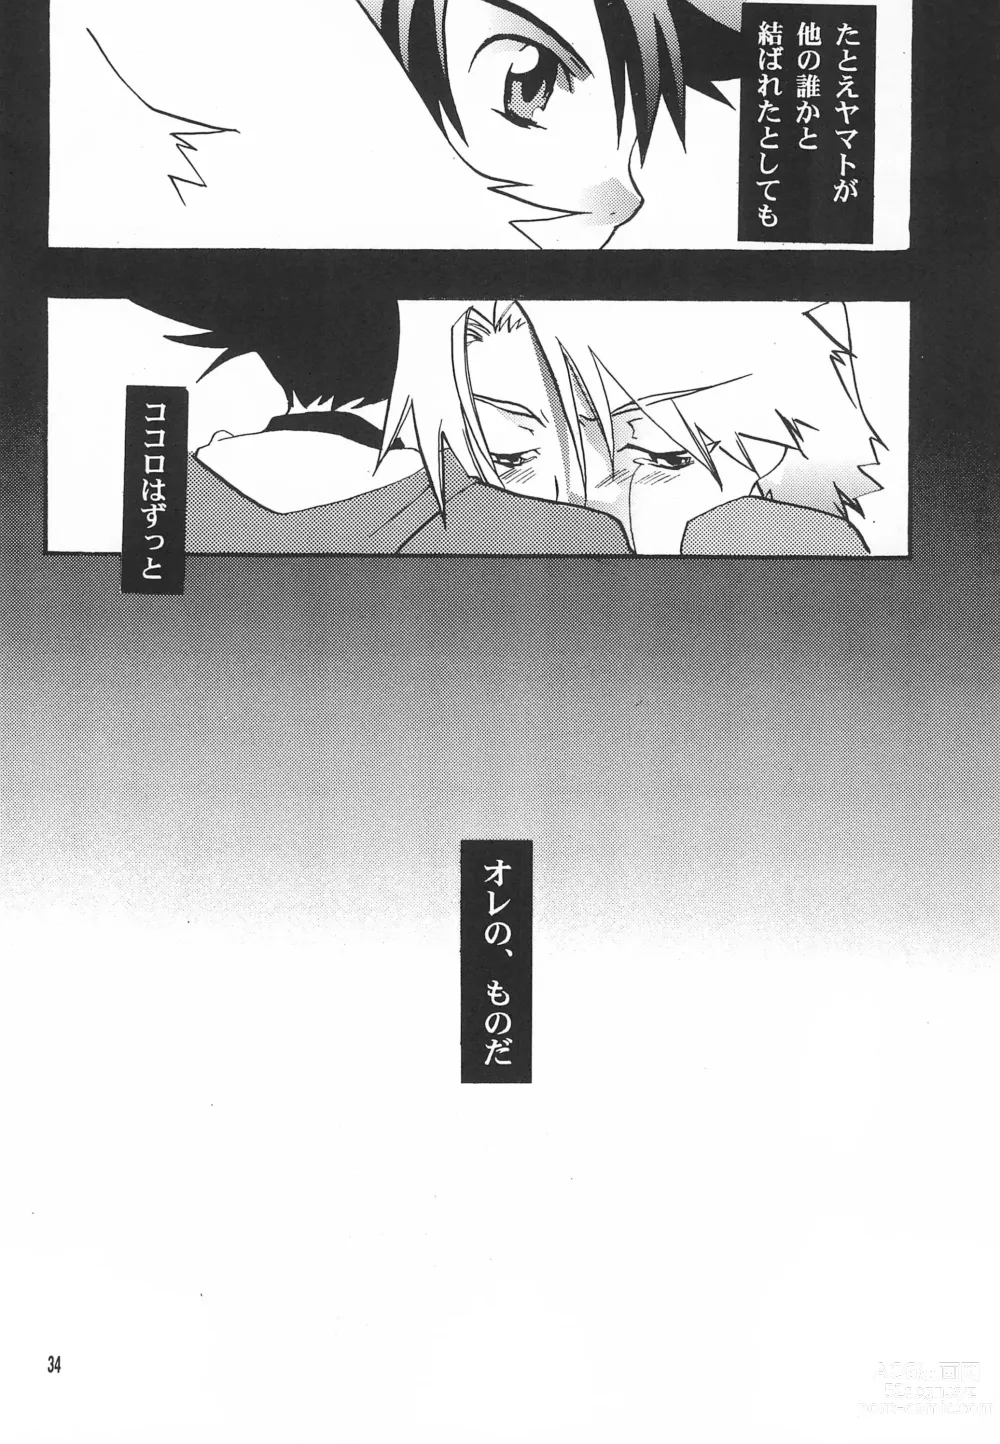 Page 36 of doujinshi Utsukushiki Samazama no Yume